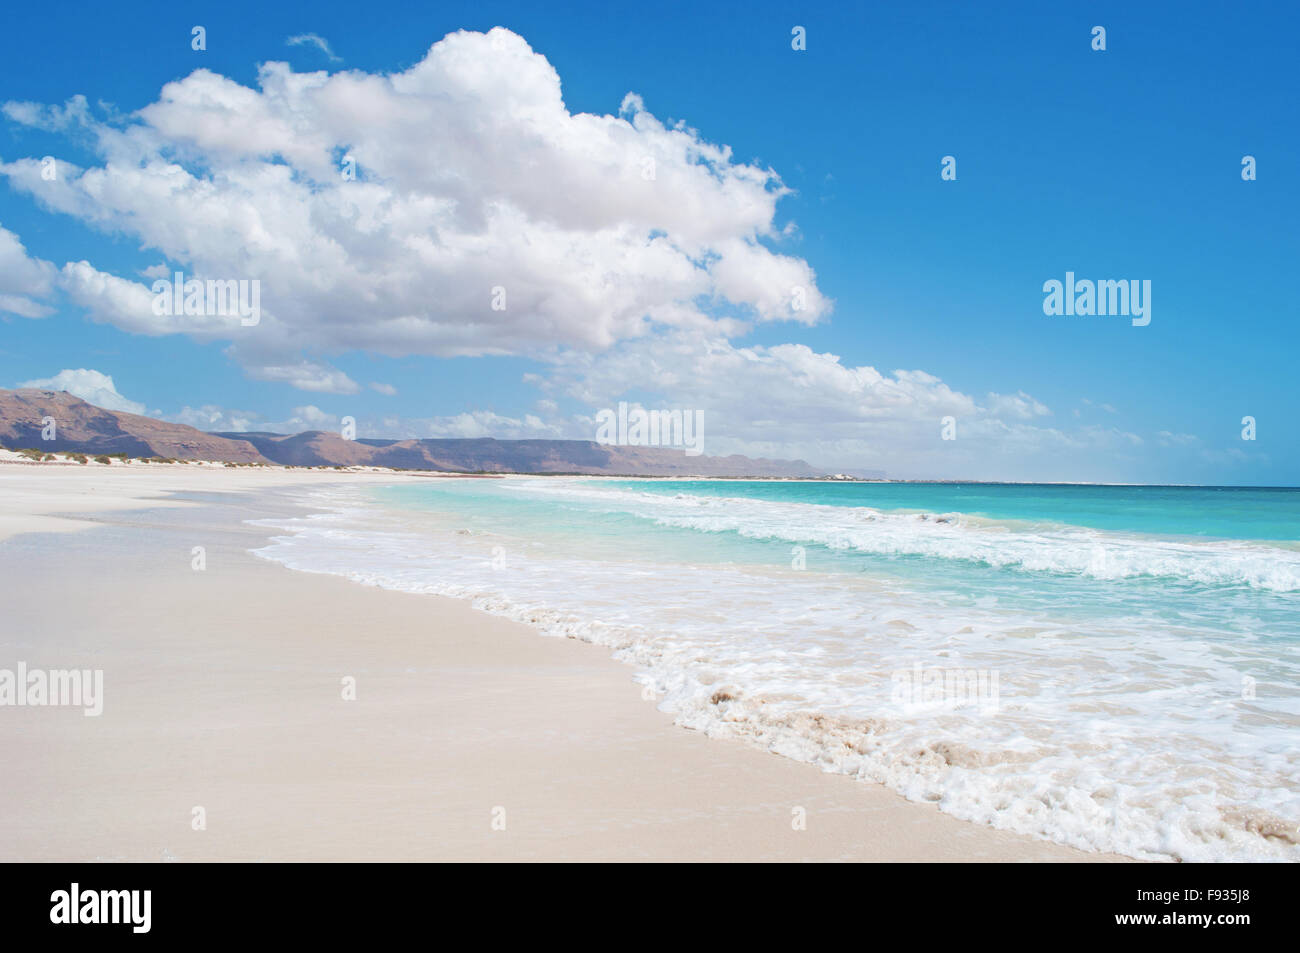 L'area protetta di Aomak beach, Golfo di Aden, Mare Arabico, isola di Socotra, Yemen, Medio Oriente, centro di biodiversità unico Foto Stock